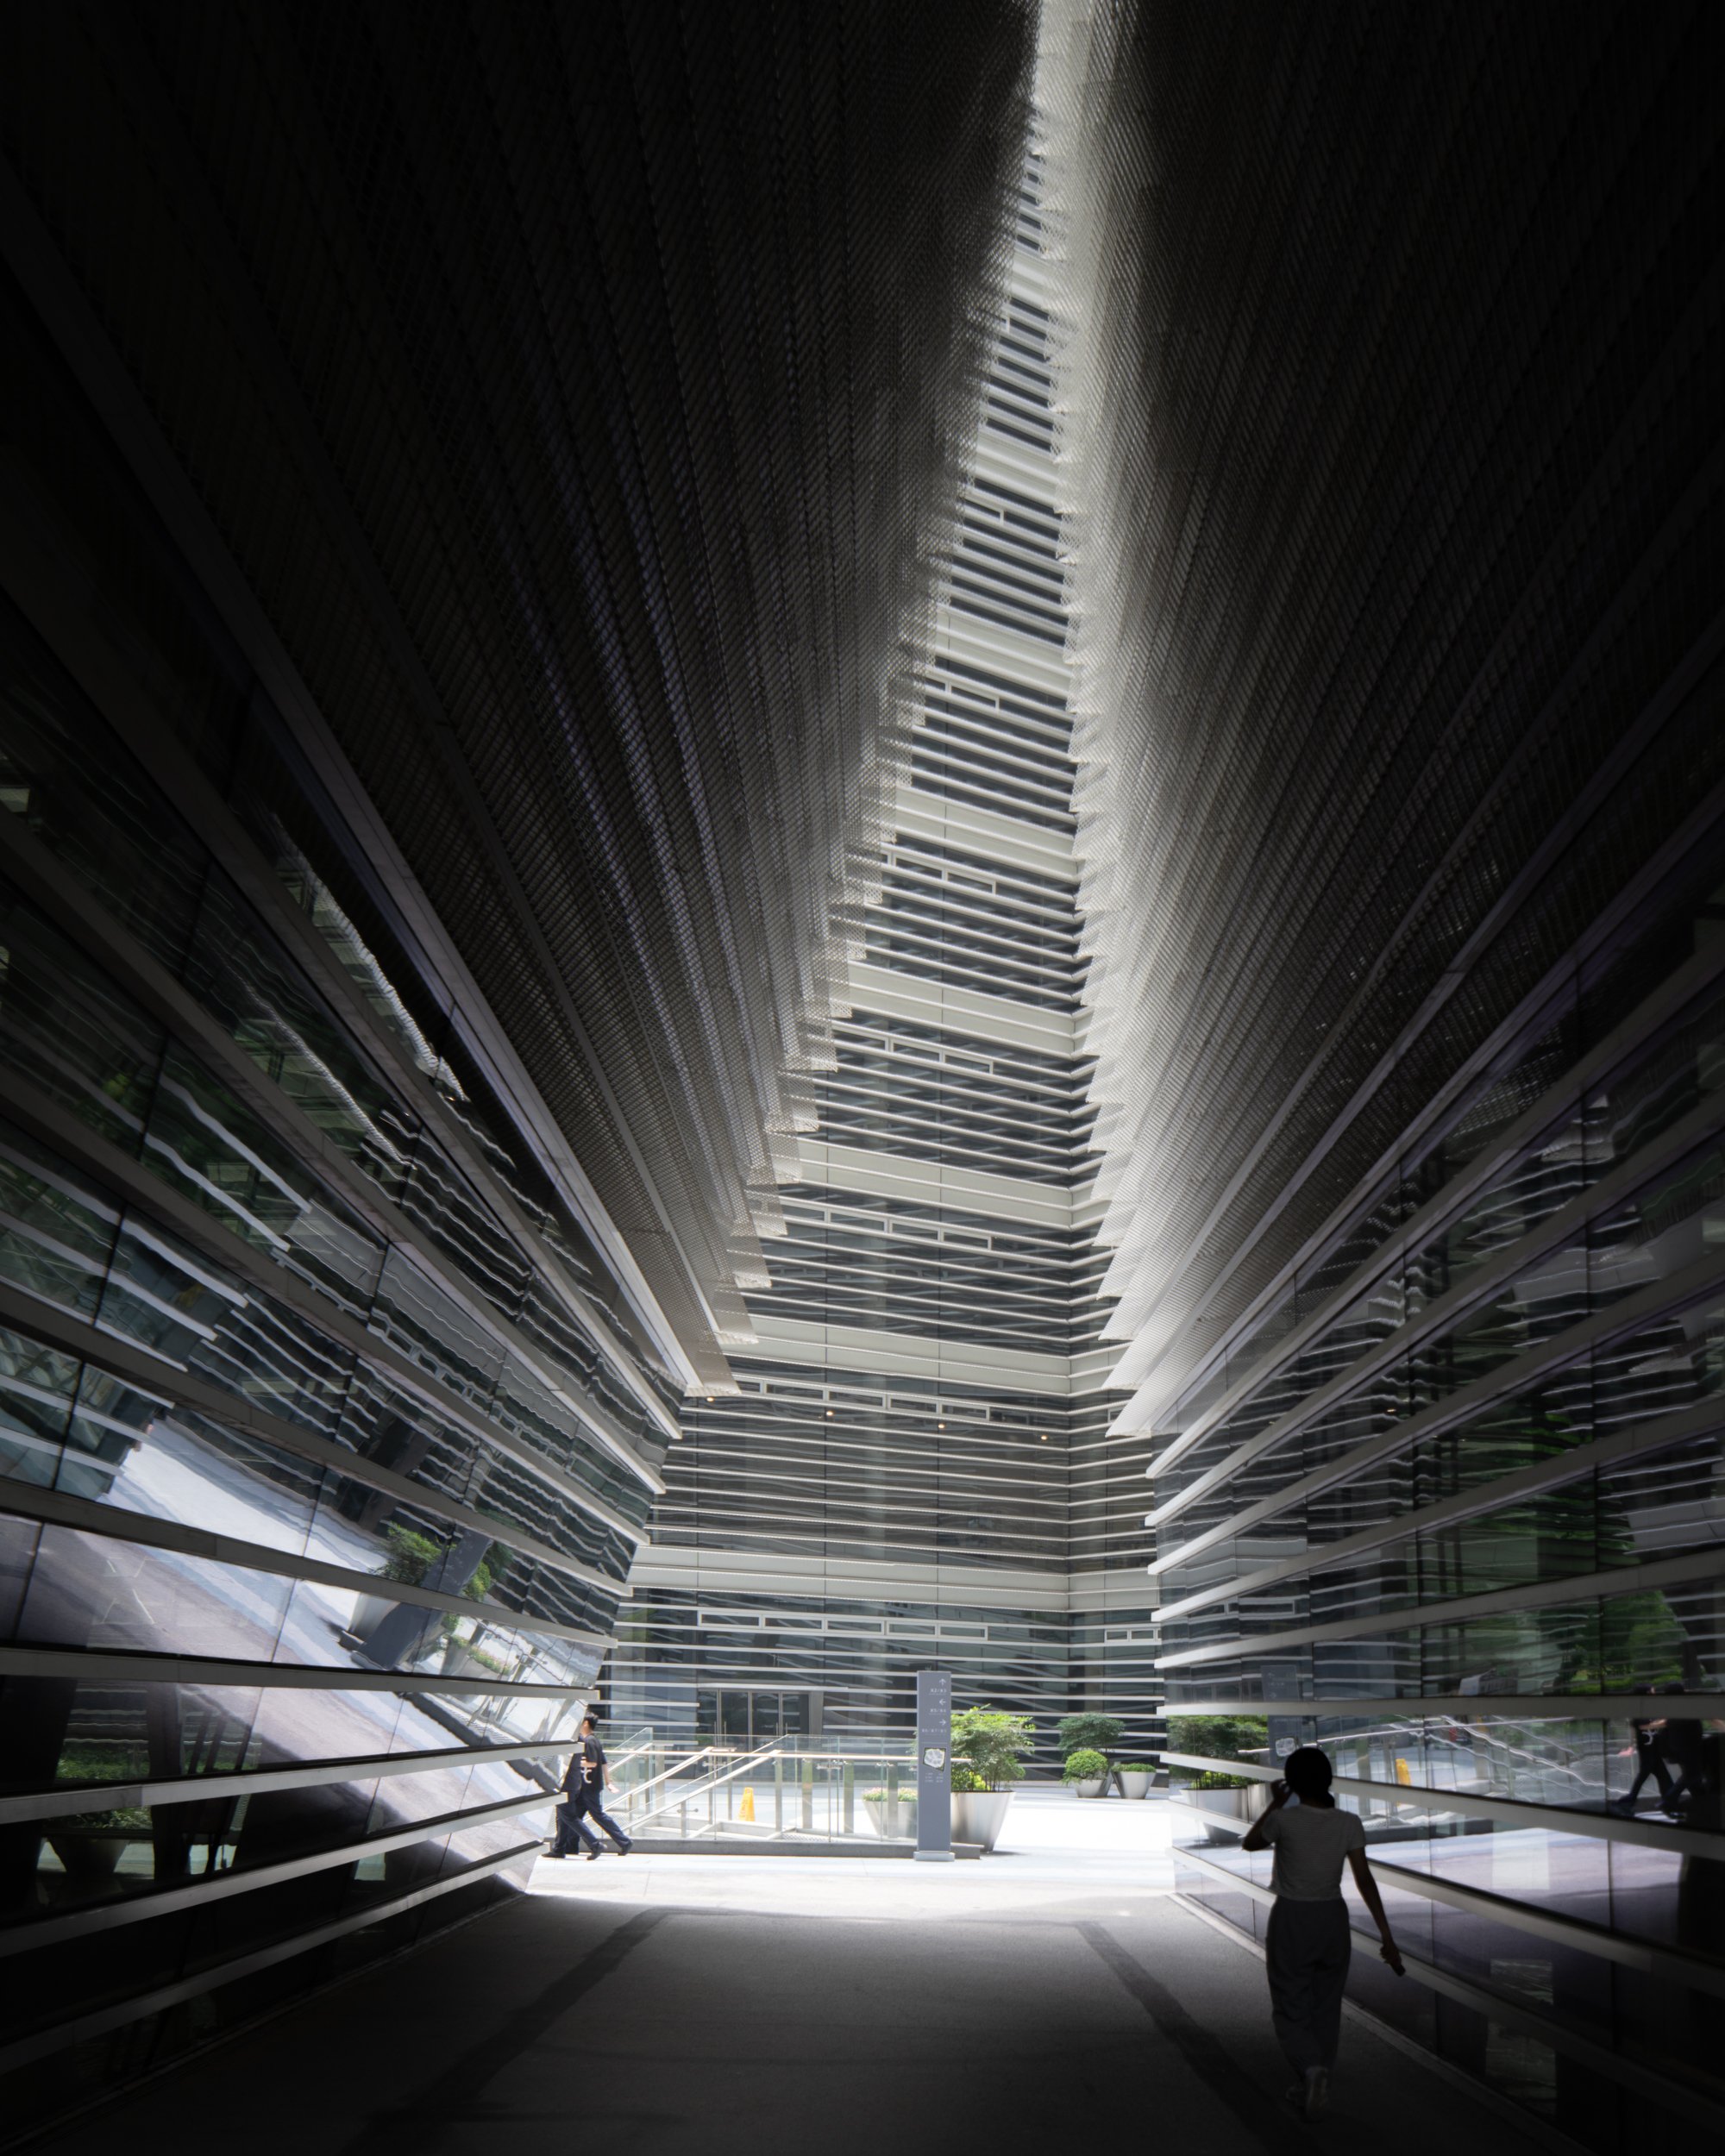  Art Tower West Bund  Design by sanaa  Shanghai 